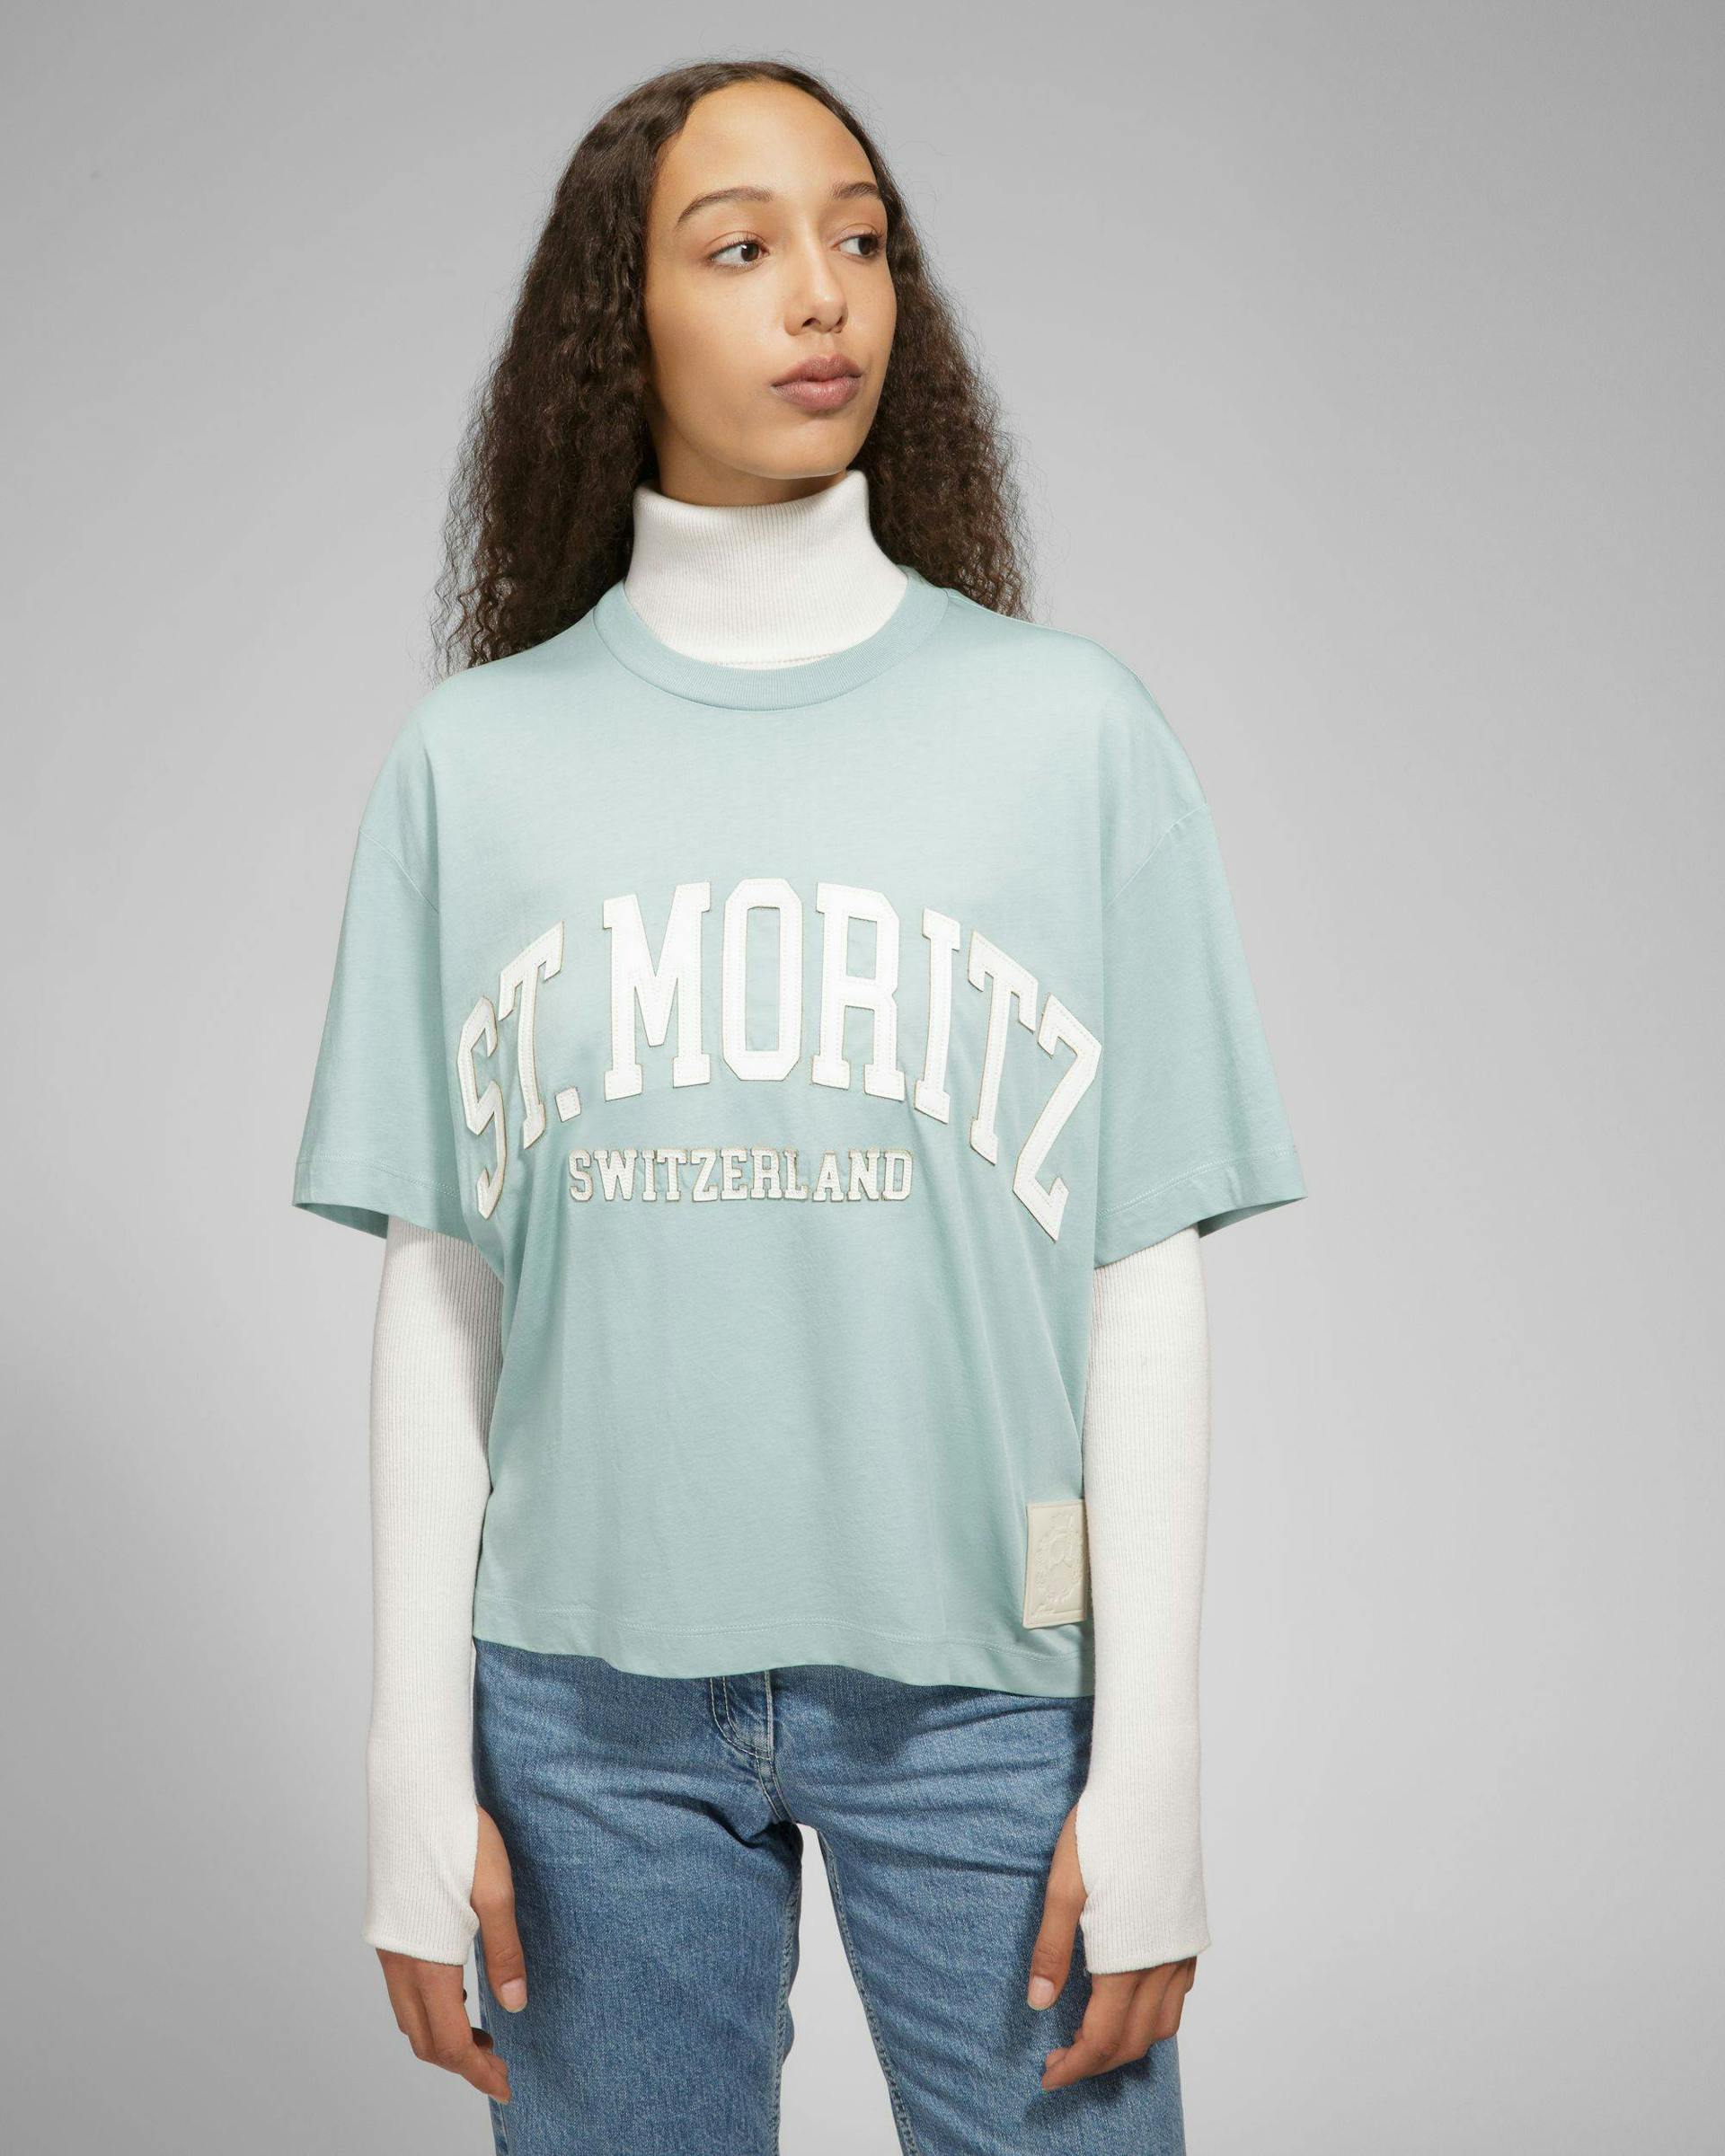 St Moritz T-Shirt - Men's - Bally - 01